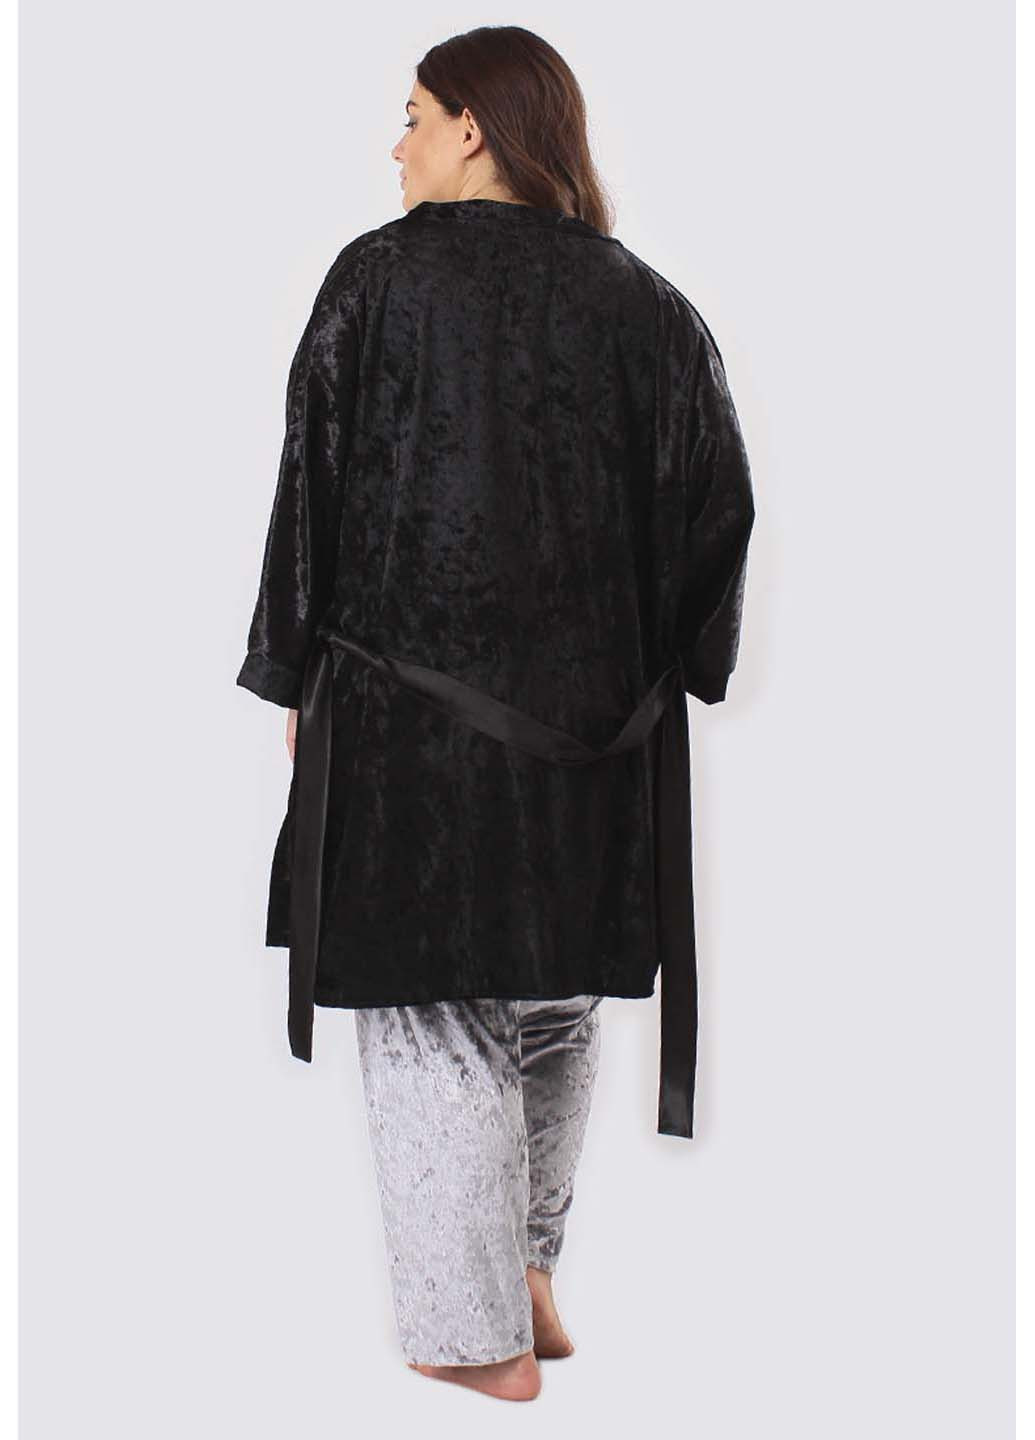 Комбинированный комплект (халат, майка, брюки) Ghazel Хлоя